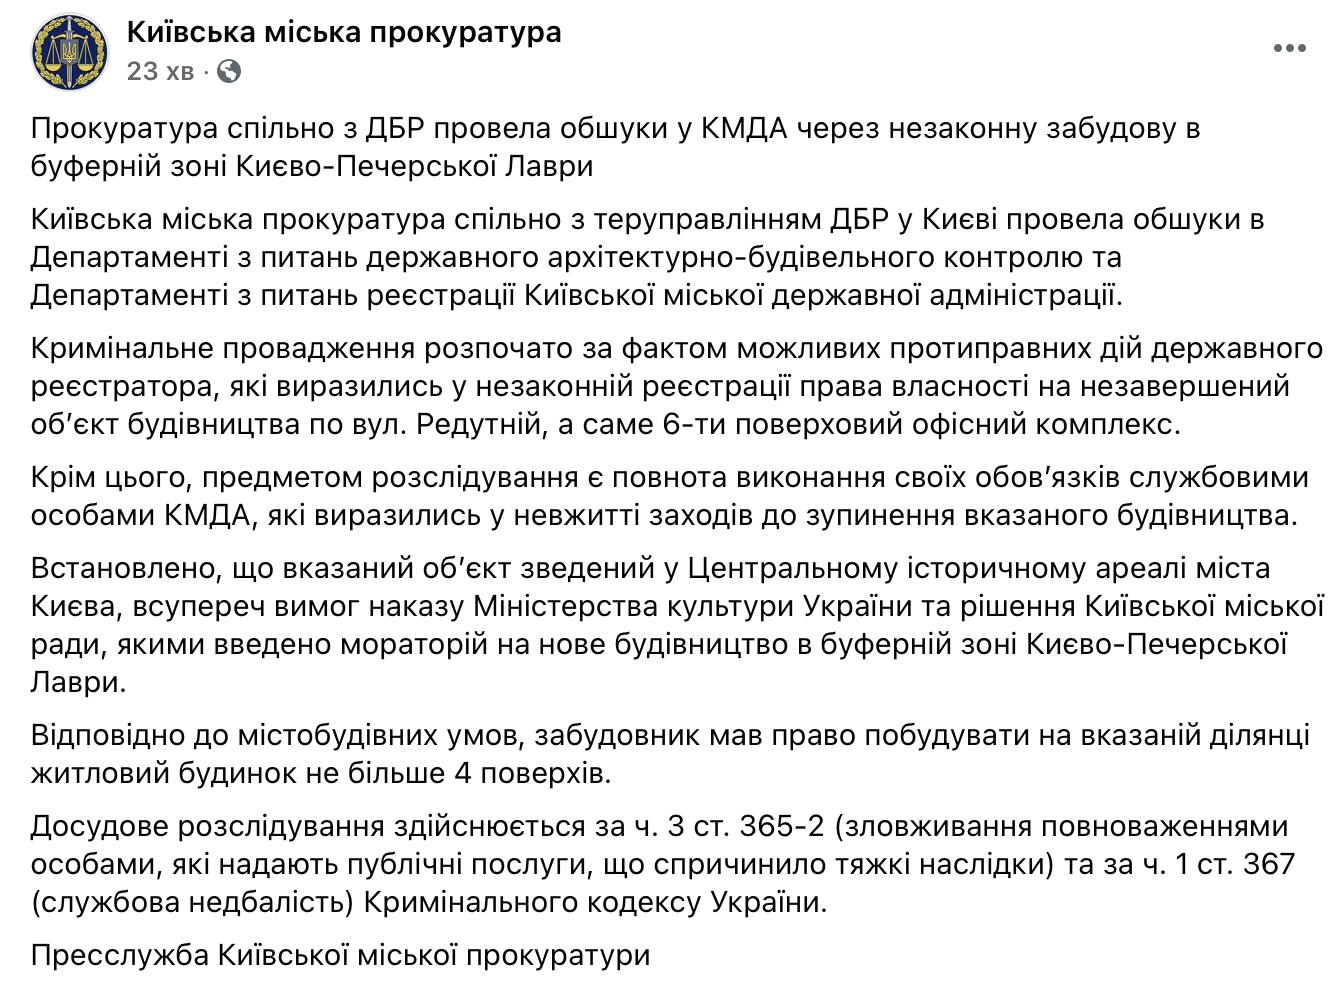 Прокуратура пришла в КГГА с обыском по делу о незаконной застройке возле Киево-Печерской Лавры